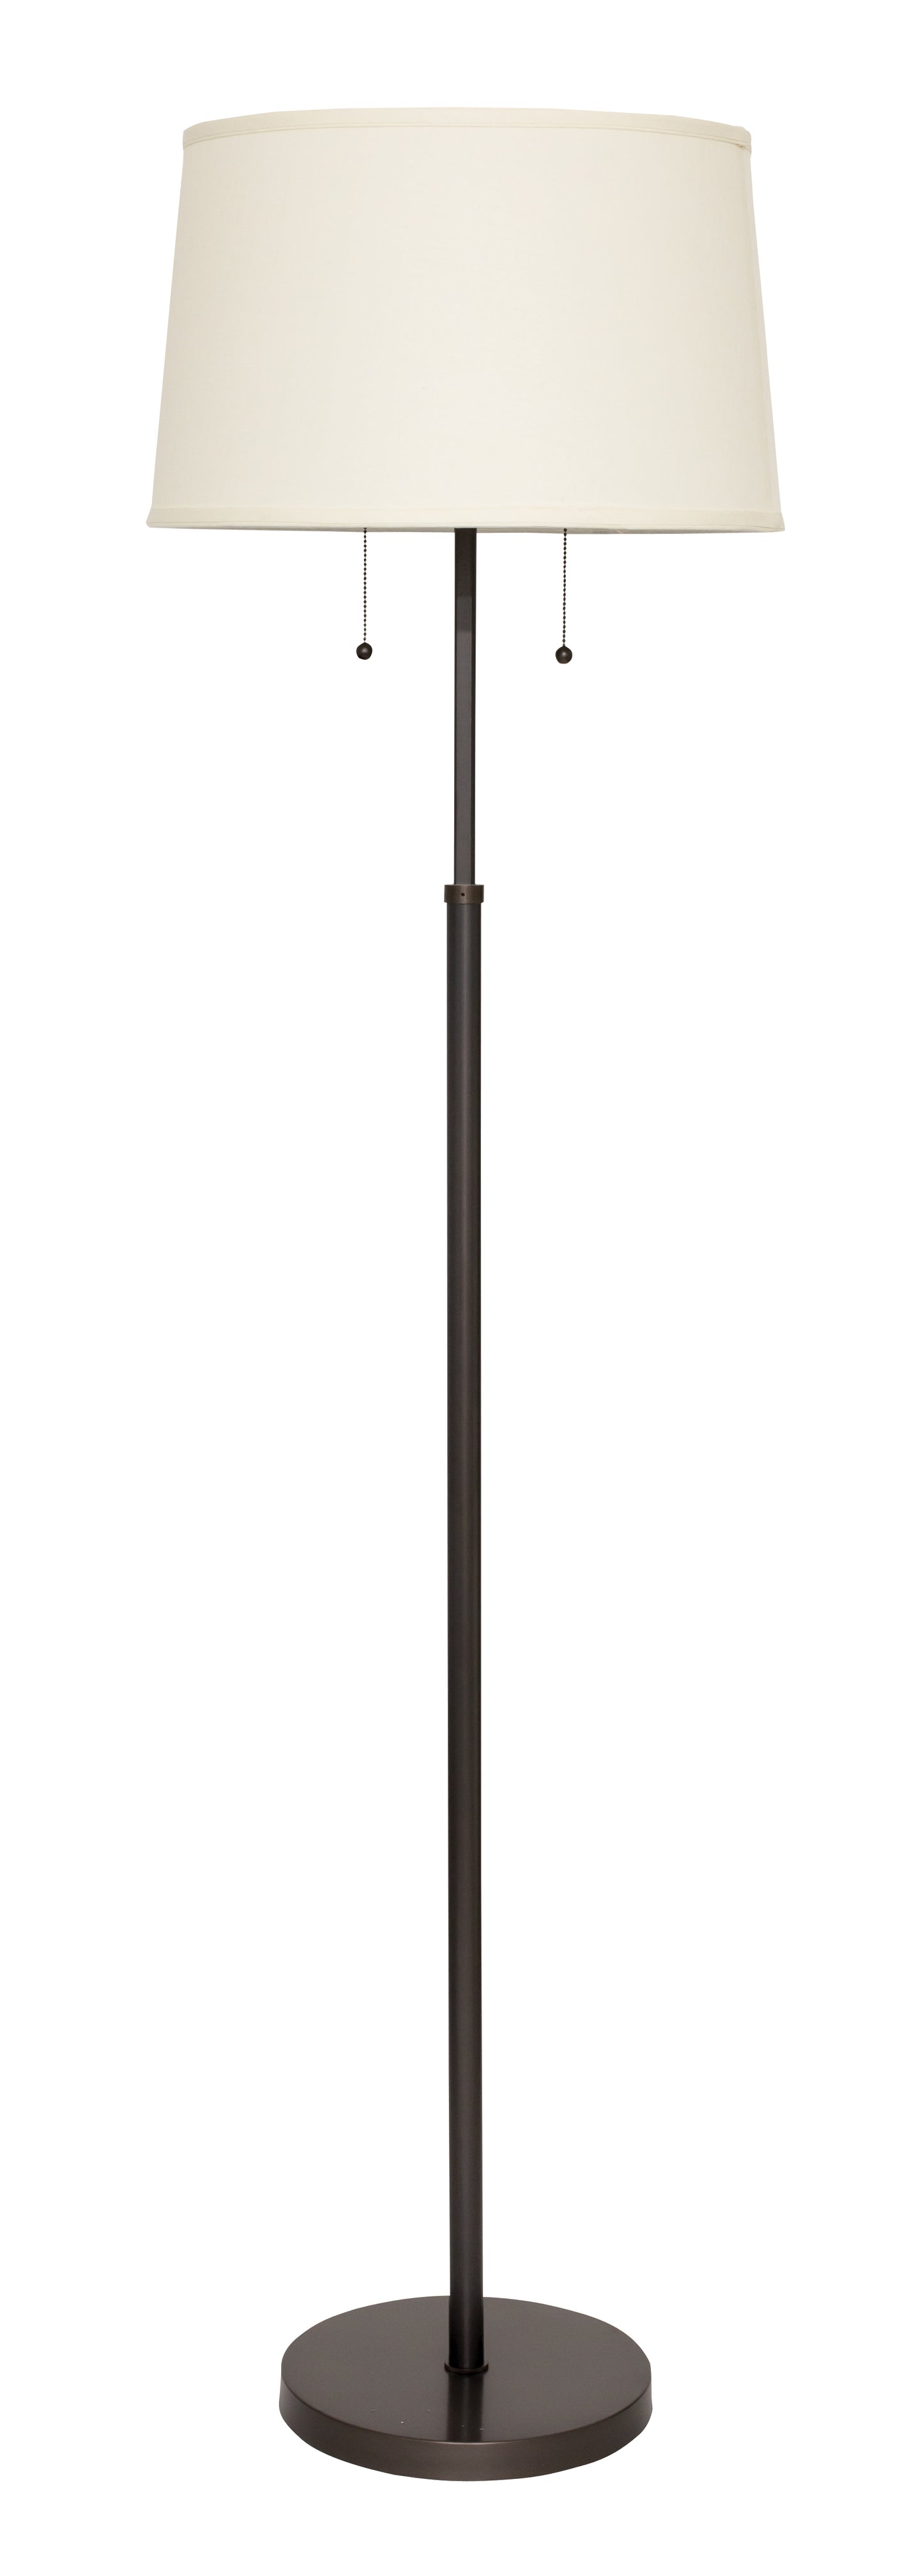 House of Troy Averill Adjustable Floor Lamp in Oil Rubbed Bronze AV100-OB